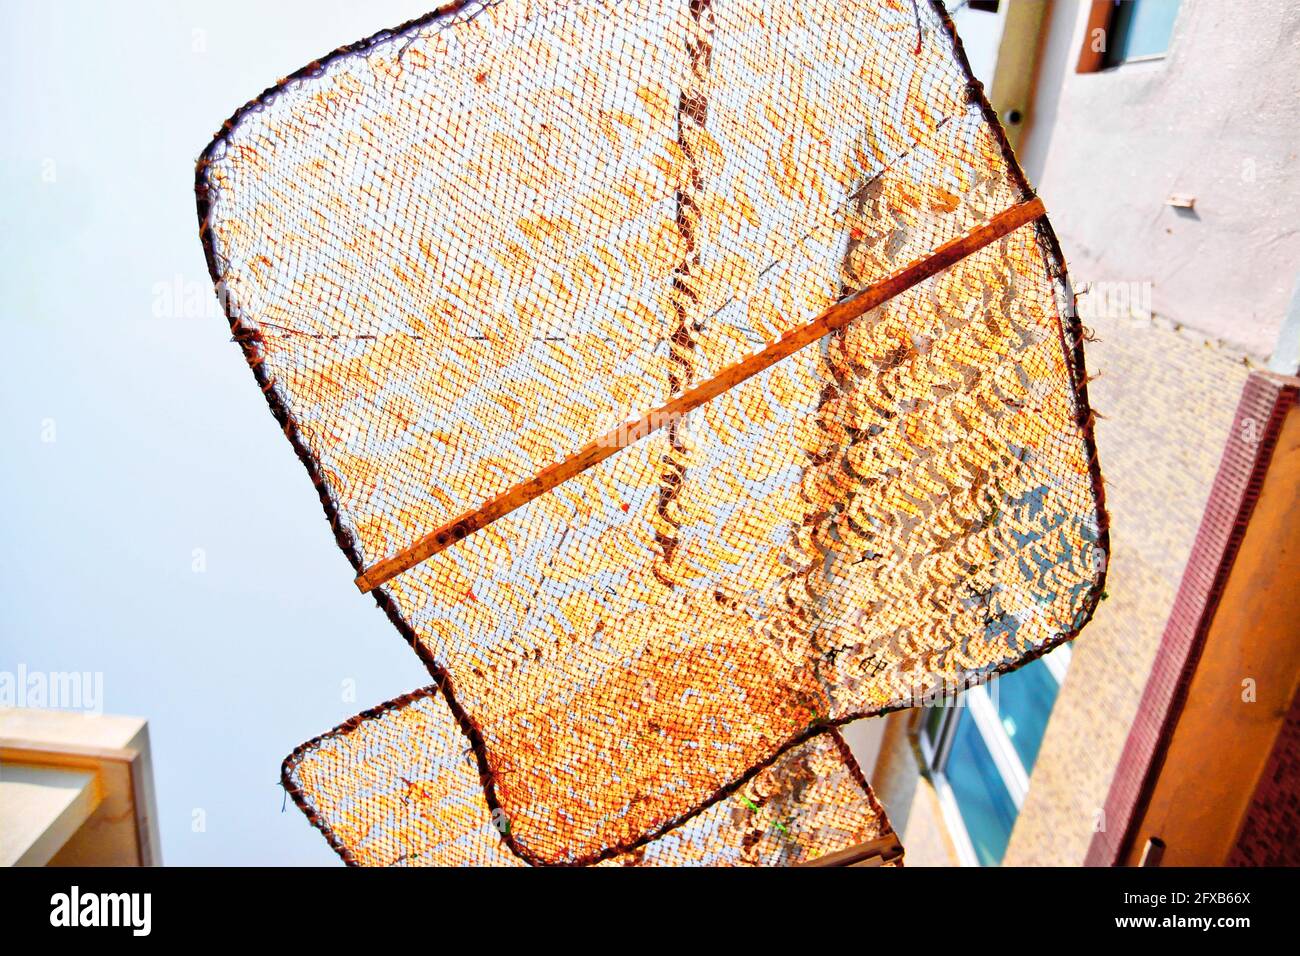 Des crevettes salées sont séchées au soleil sur des filets surélevés à Tai O, sur l'île de Lantau, à Hong Kong. Les fruits de mer séchés sont couramment utilisés dans la cuisine chinoise et le soleil sec Banque D'Images